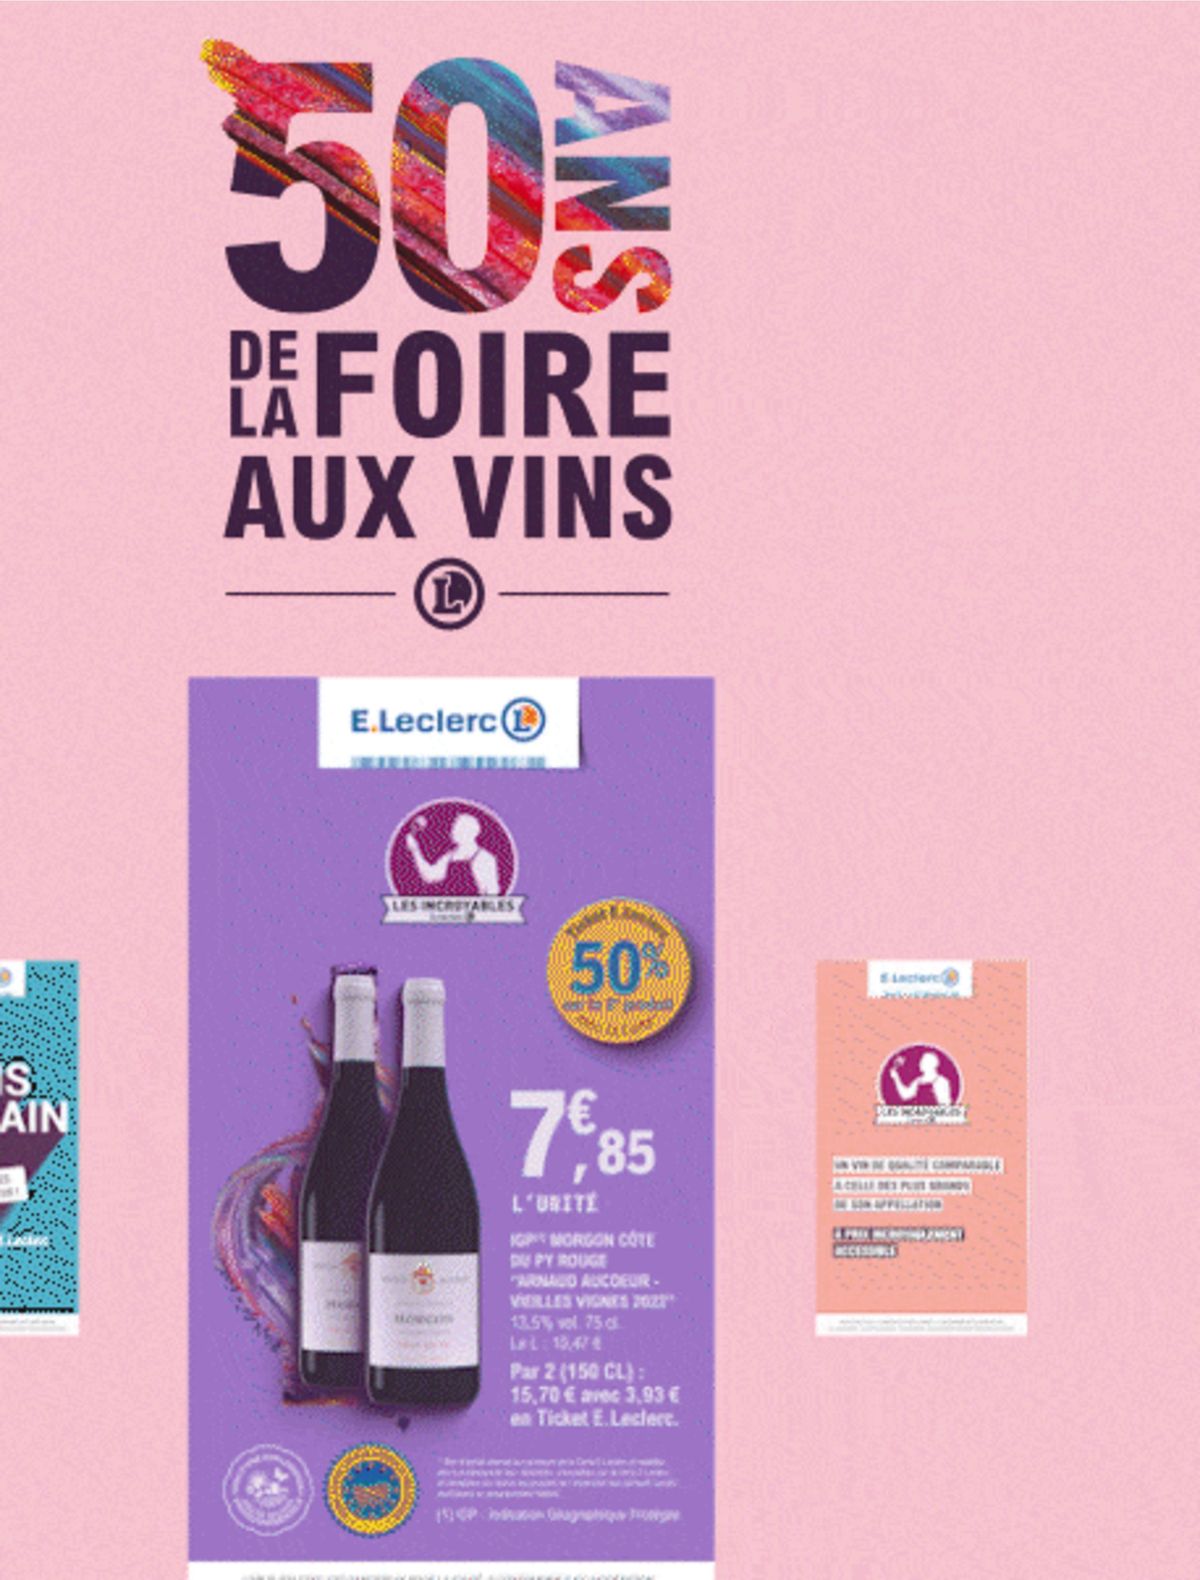 Catalogue Foire Aux Vins - Mixte, page 00360